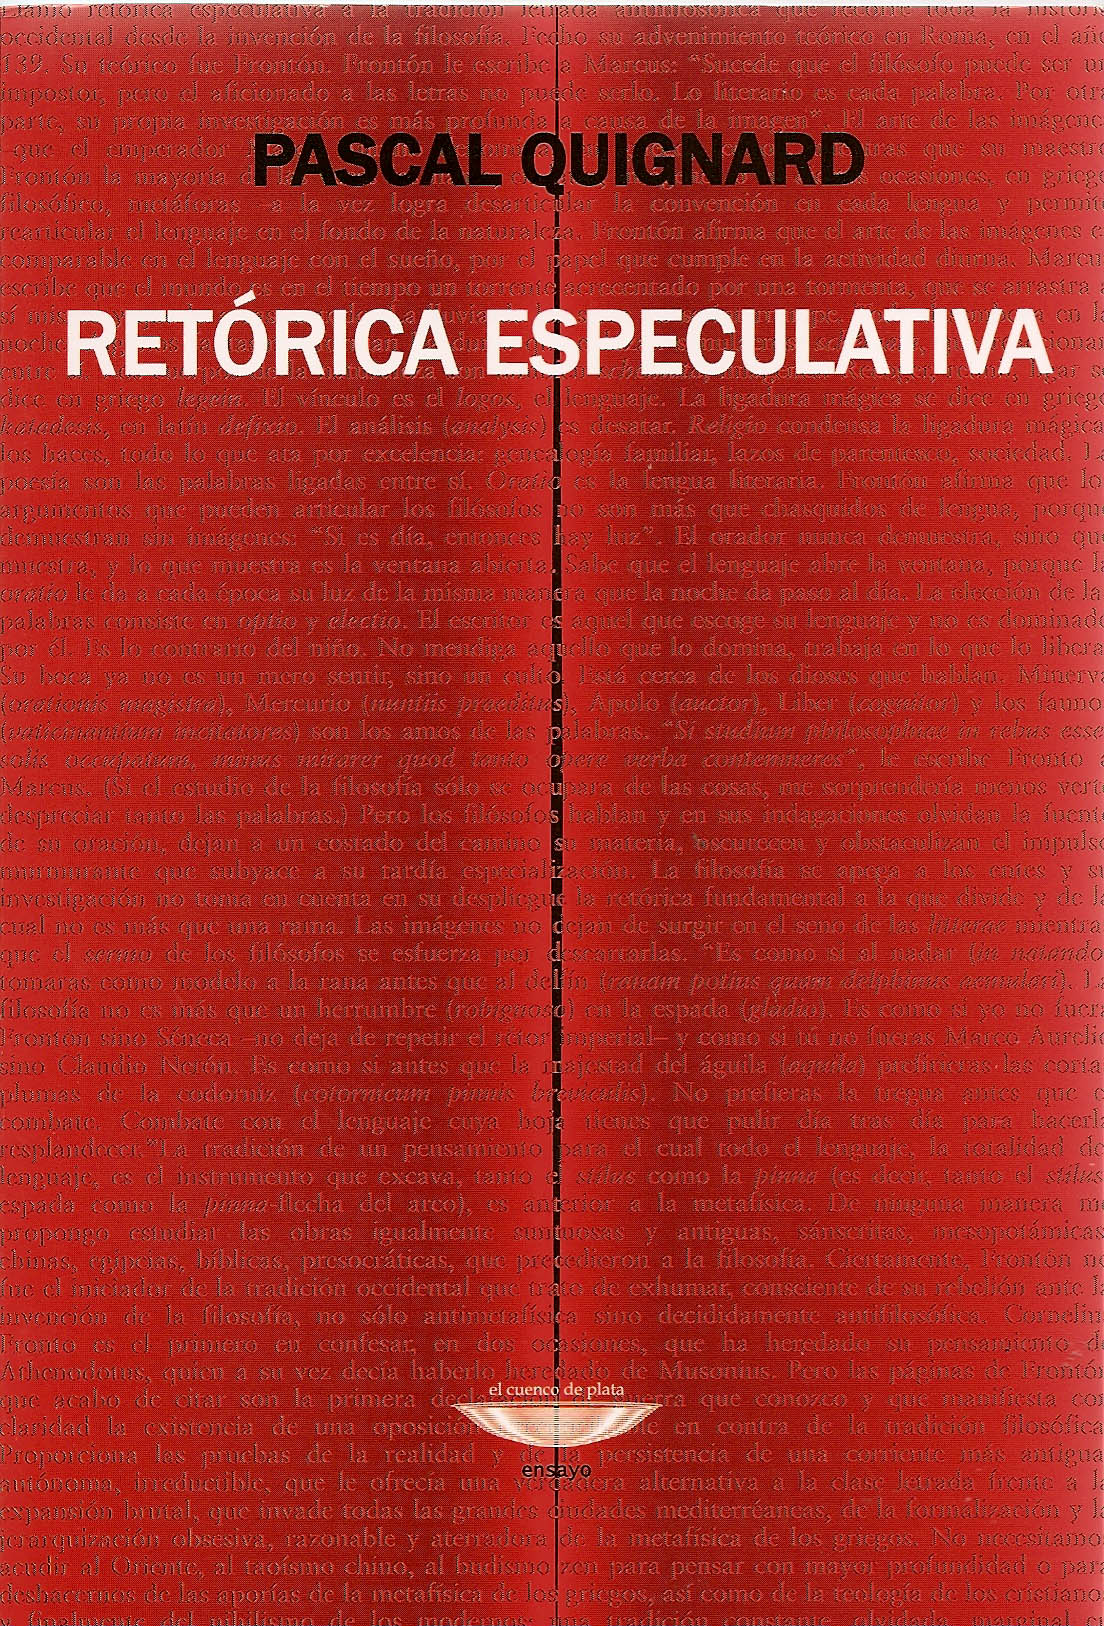 RETORICA ESPECULATIVA. 